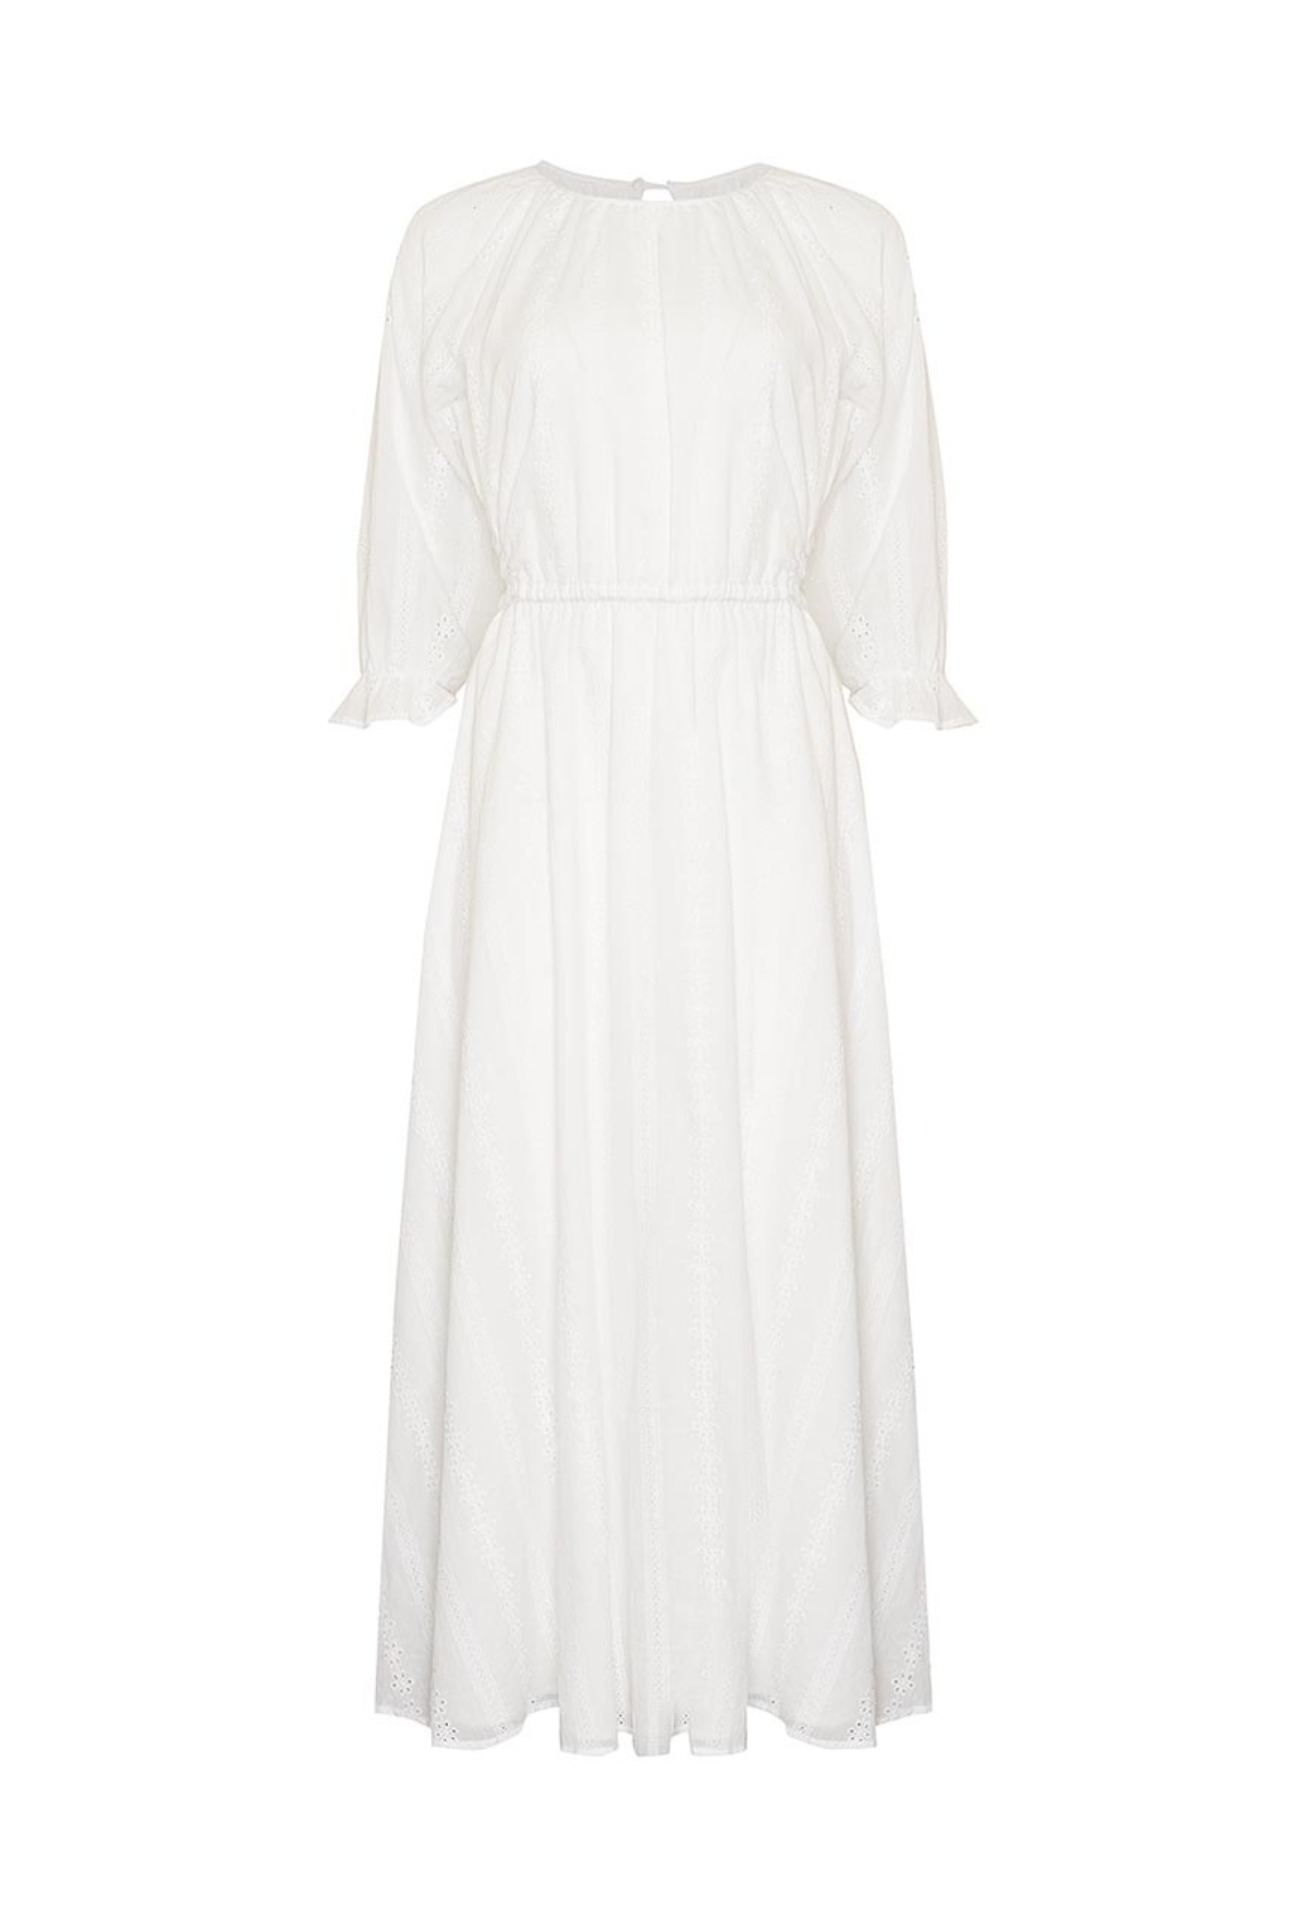 MARINE MAXI DRESS - WHITE EYELET